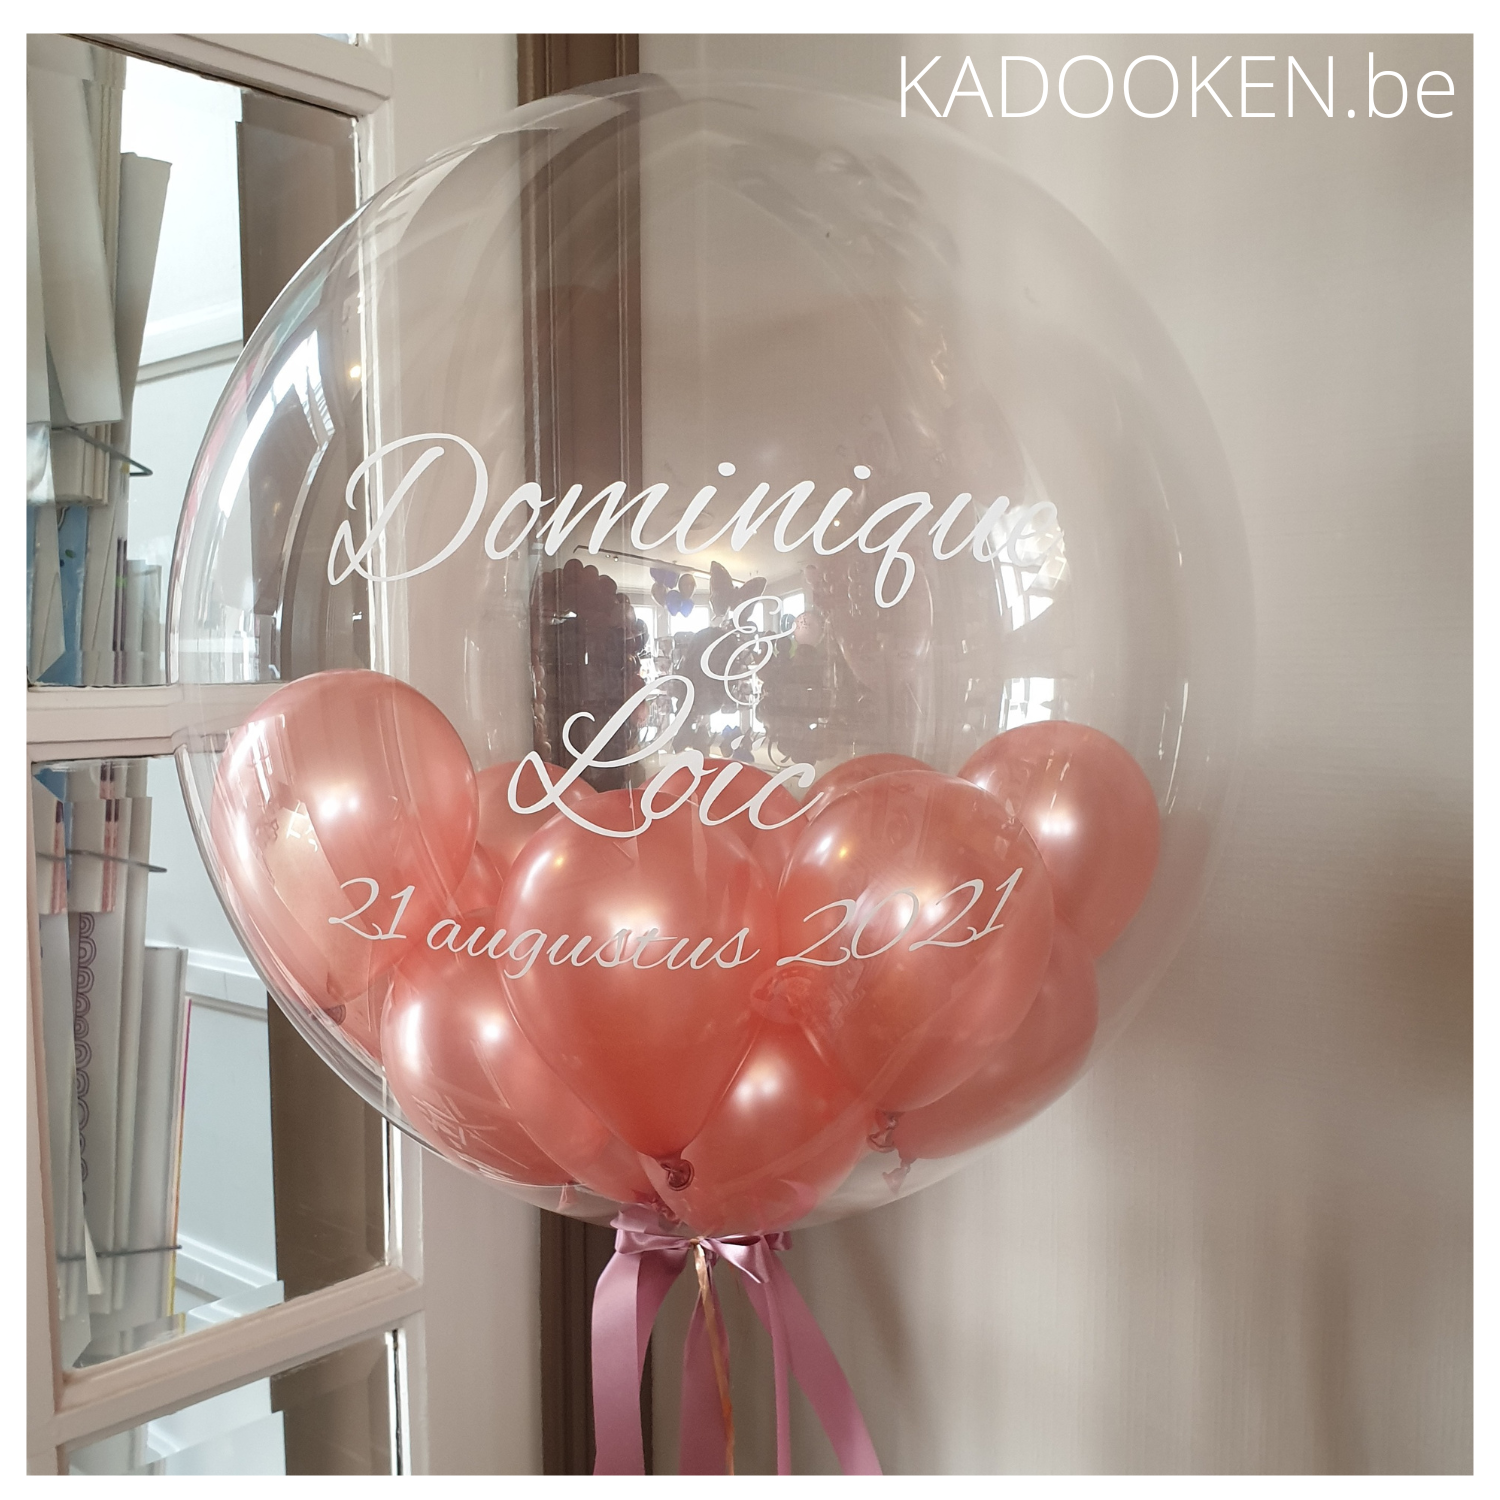 maagd voorbeeld juni Bubble ballon met eigen tekst gevuld met mini-ballonnen – KADOOKEN.be